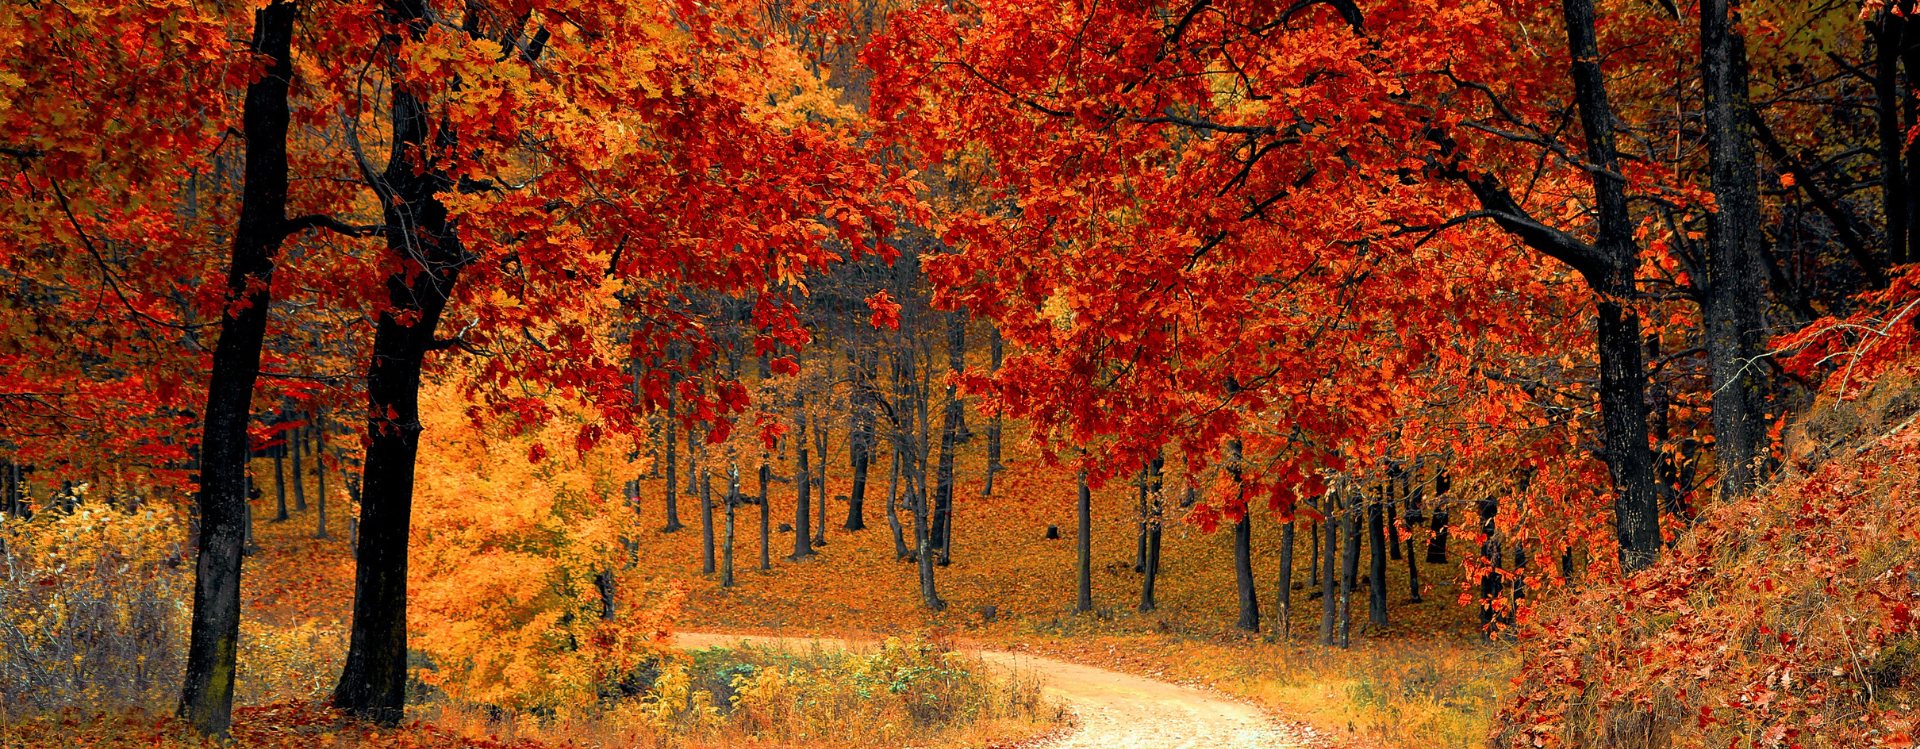 Fall foliage and road